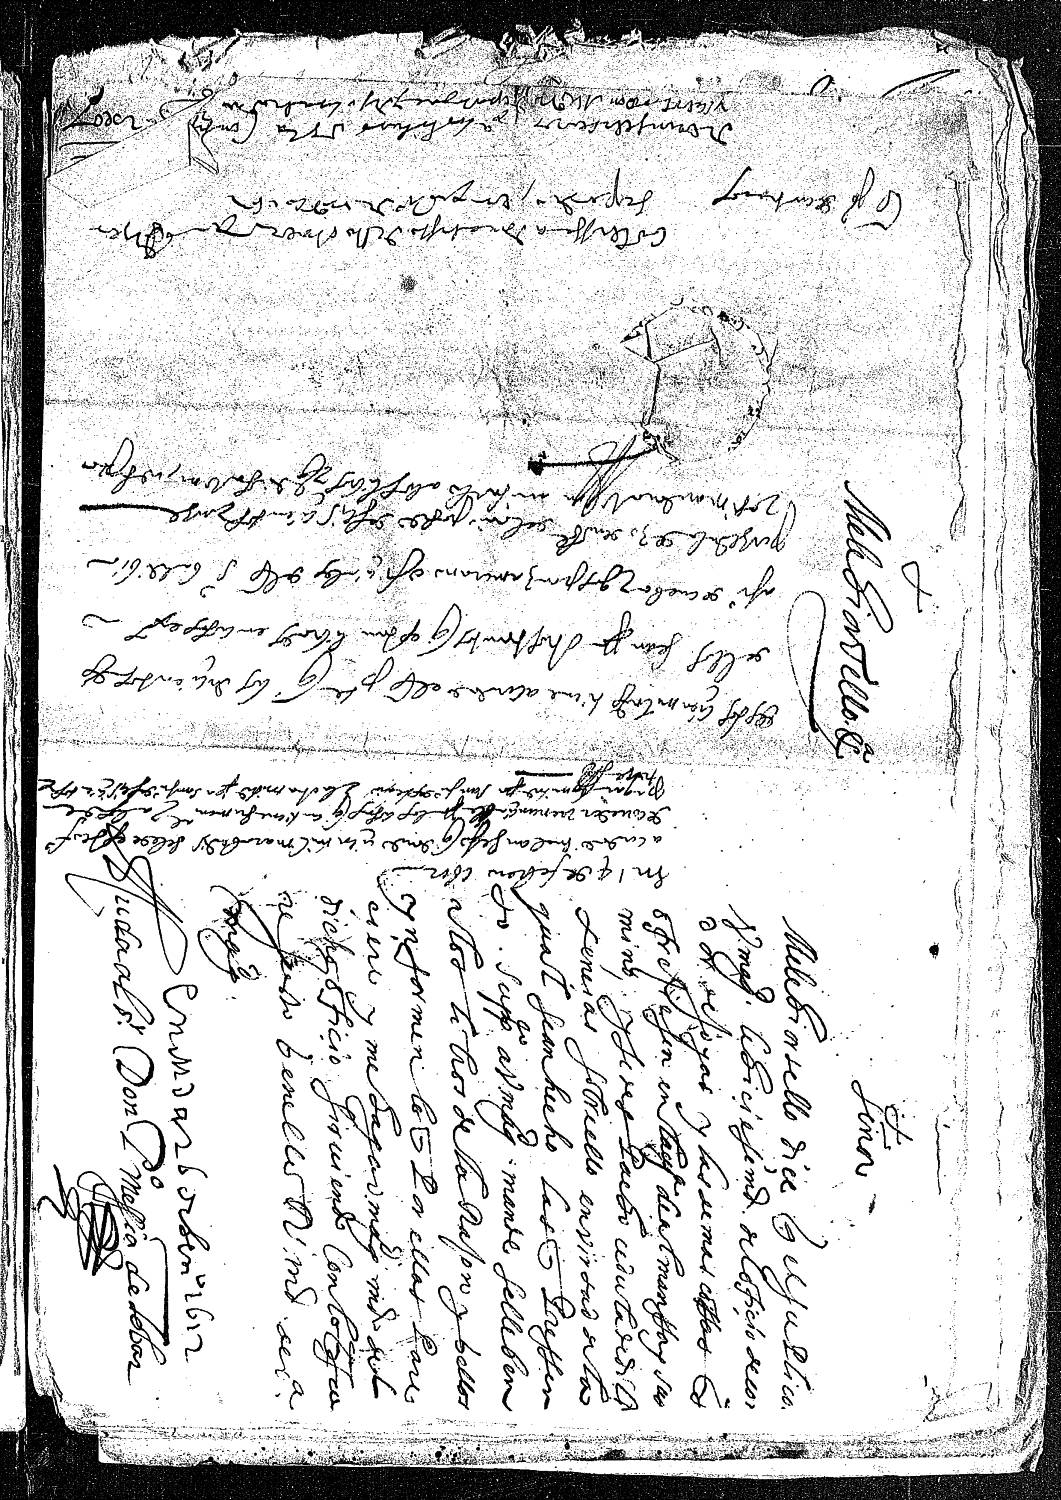 Petición de Melchor Tello solicitando al rey la merced del oficio de corredor, pues ha presentado la cédula de diligencias sobre este asunto.